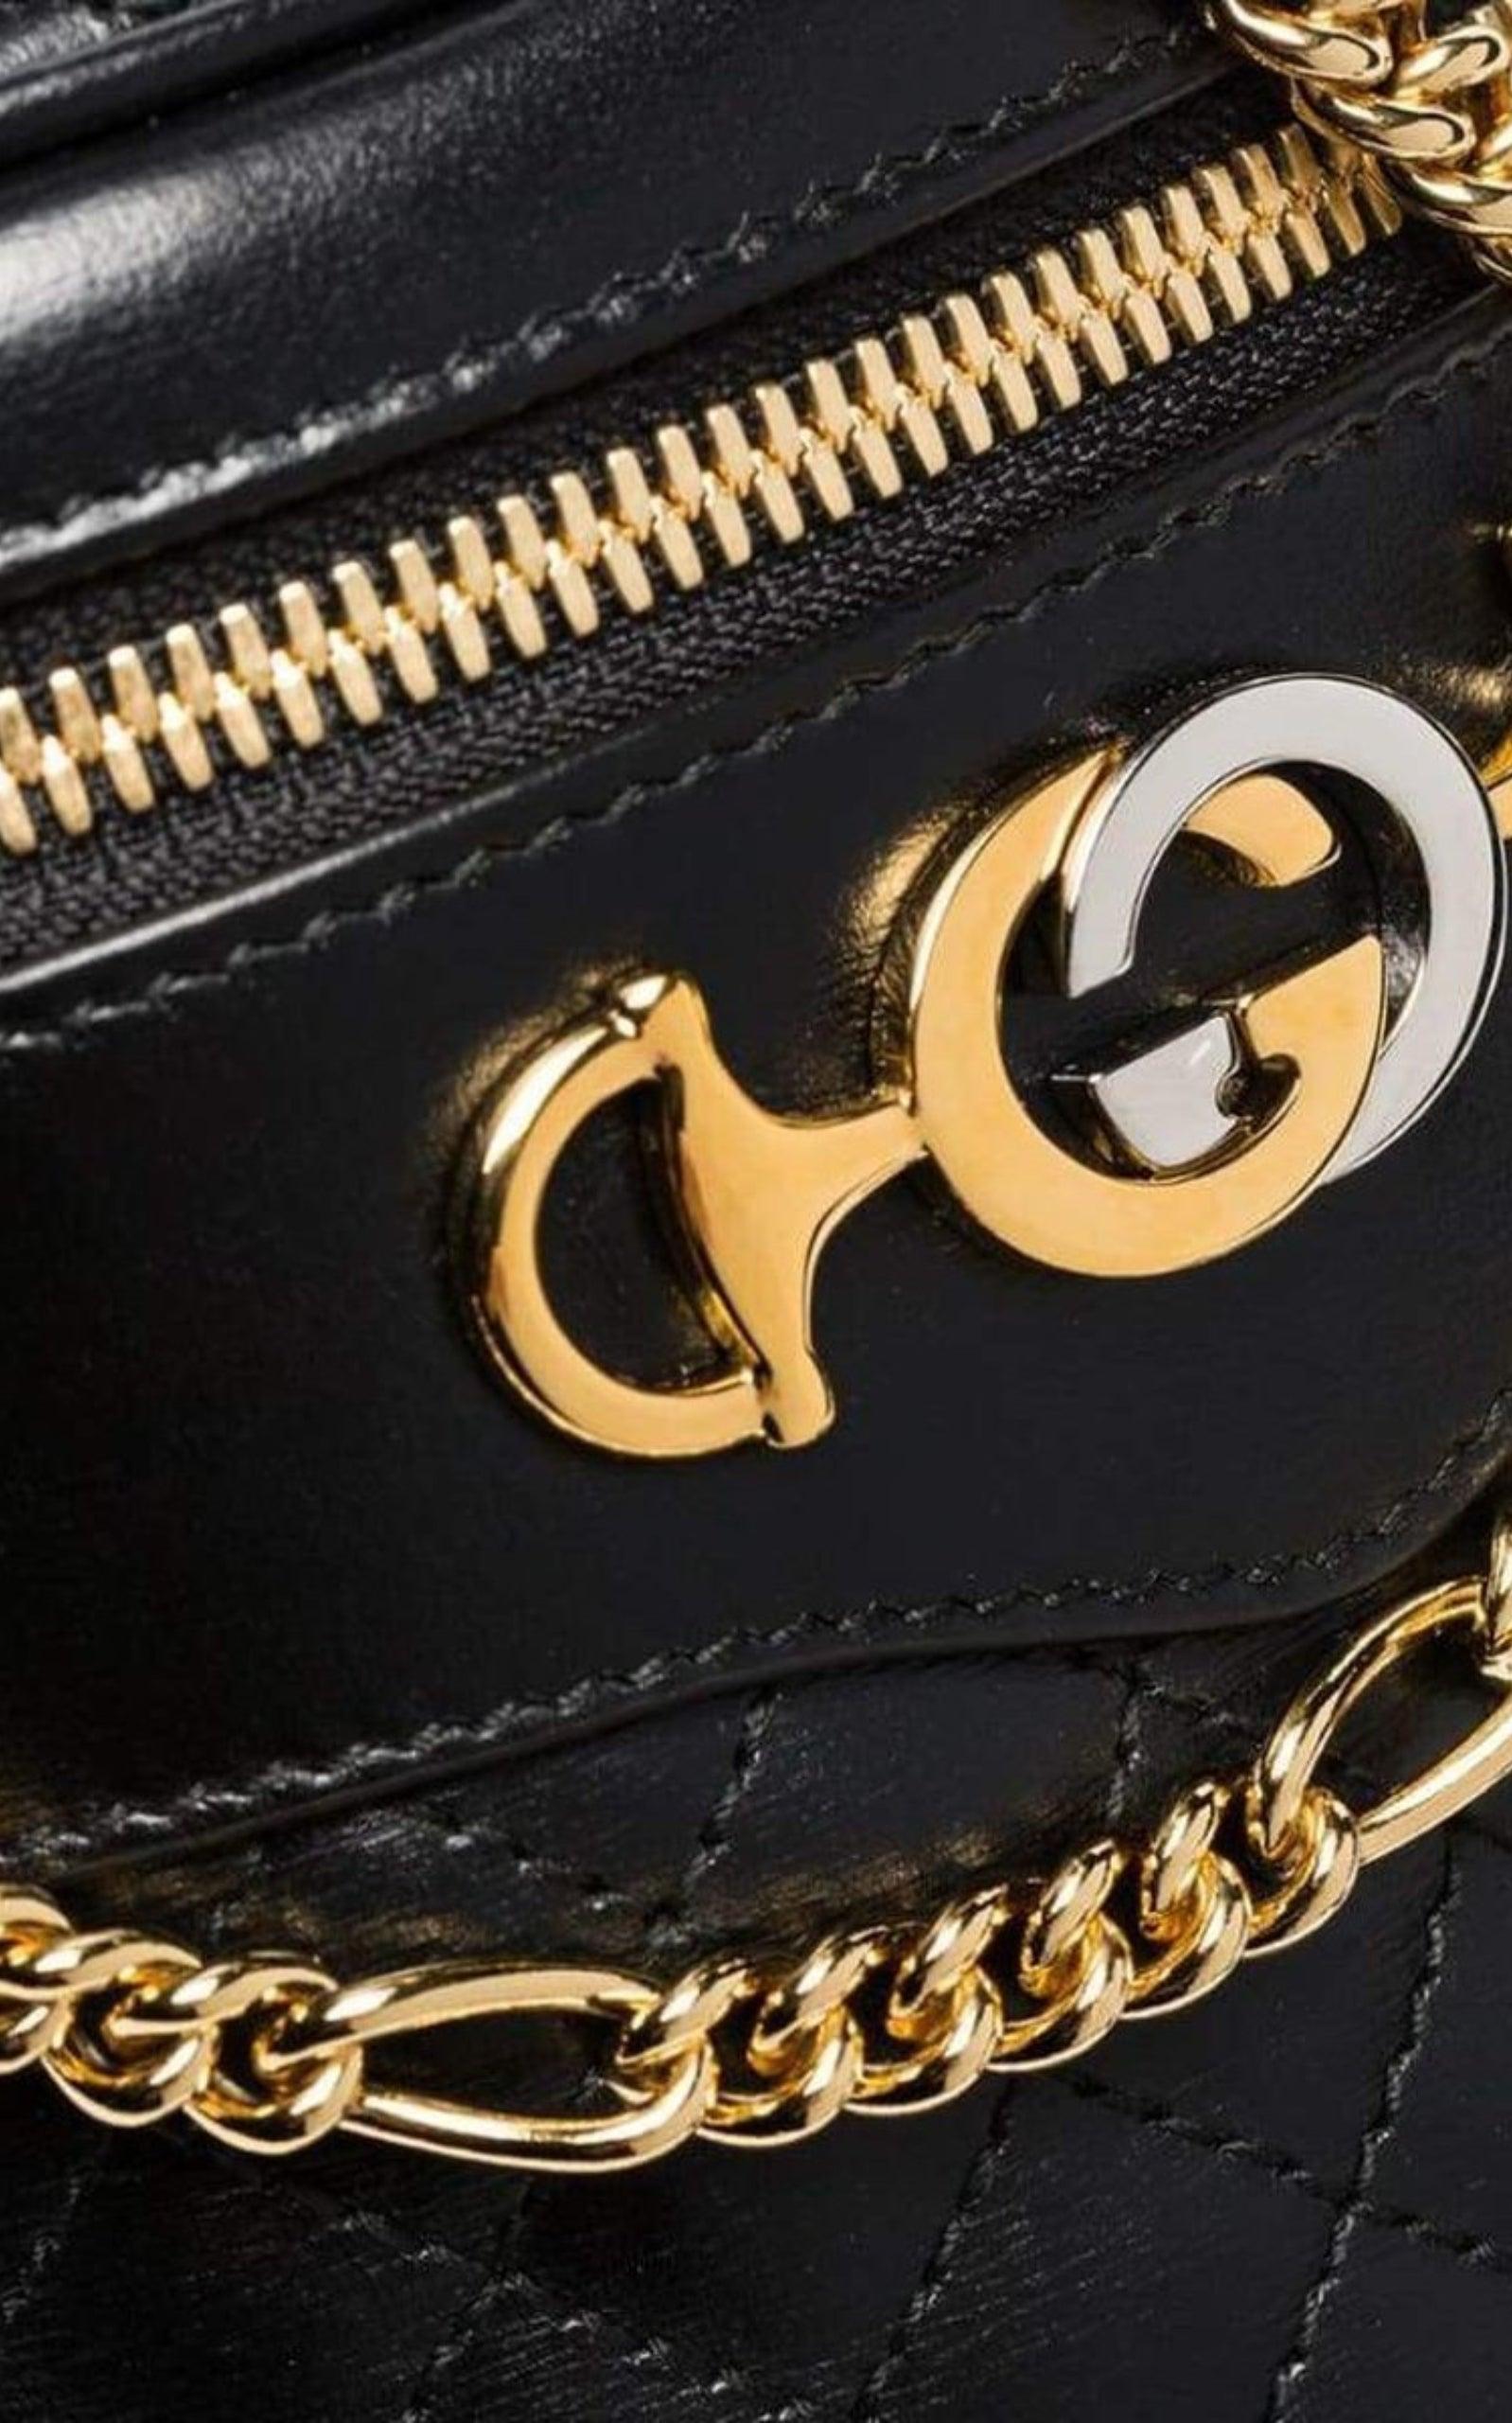 Gucci, Bags, Gucci Black Gold Shoulder Bag